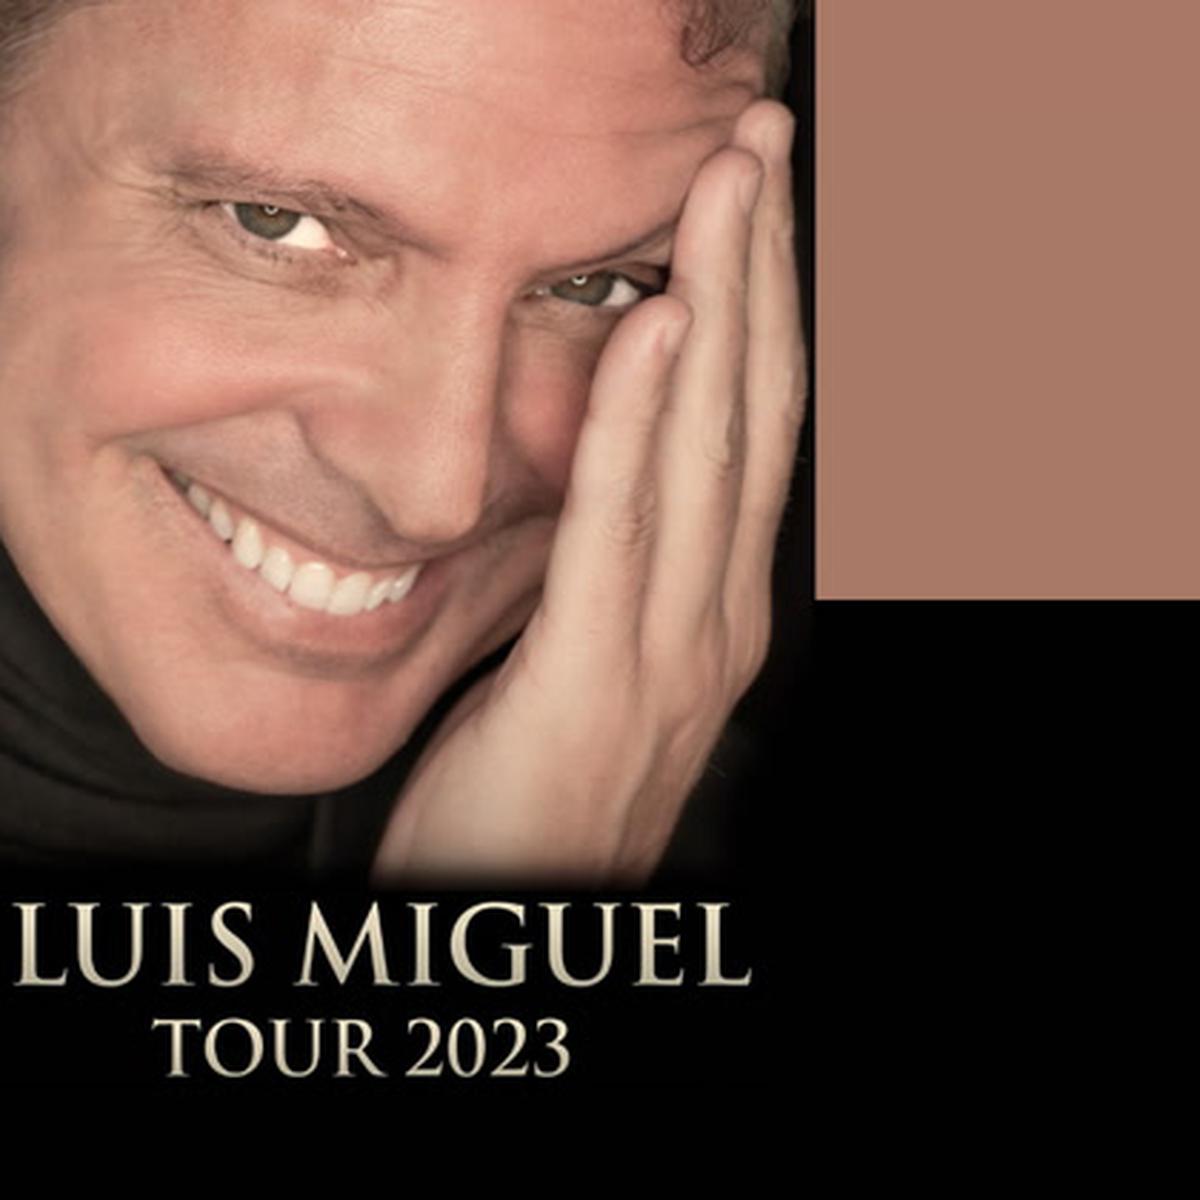 El sorprendente cambio de look de Luis Miguel: así luce tras 'rejuvenecer'  20 años, Luis Miguel 2023 antes y despues, dieta de Luis Miguel, USA